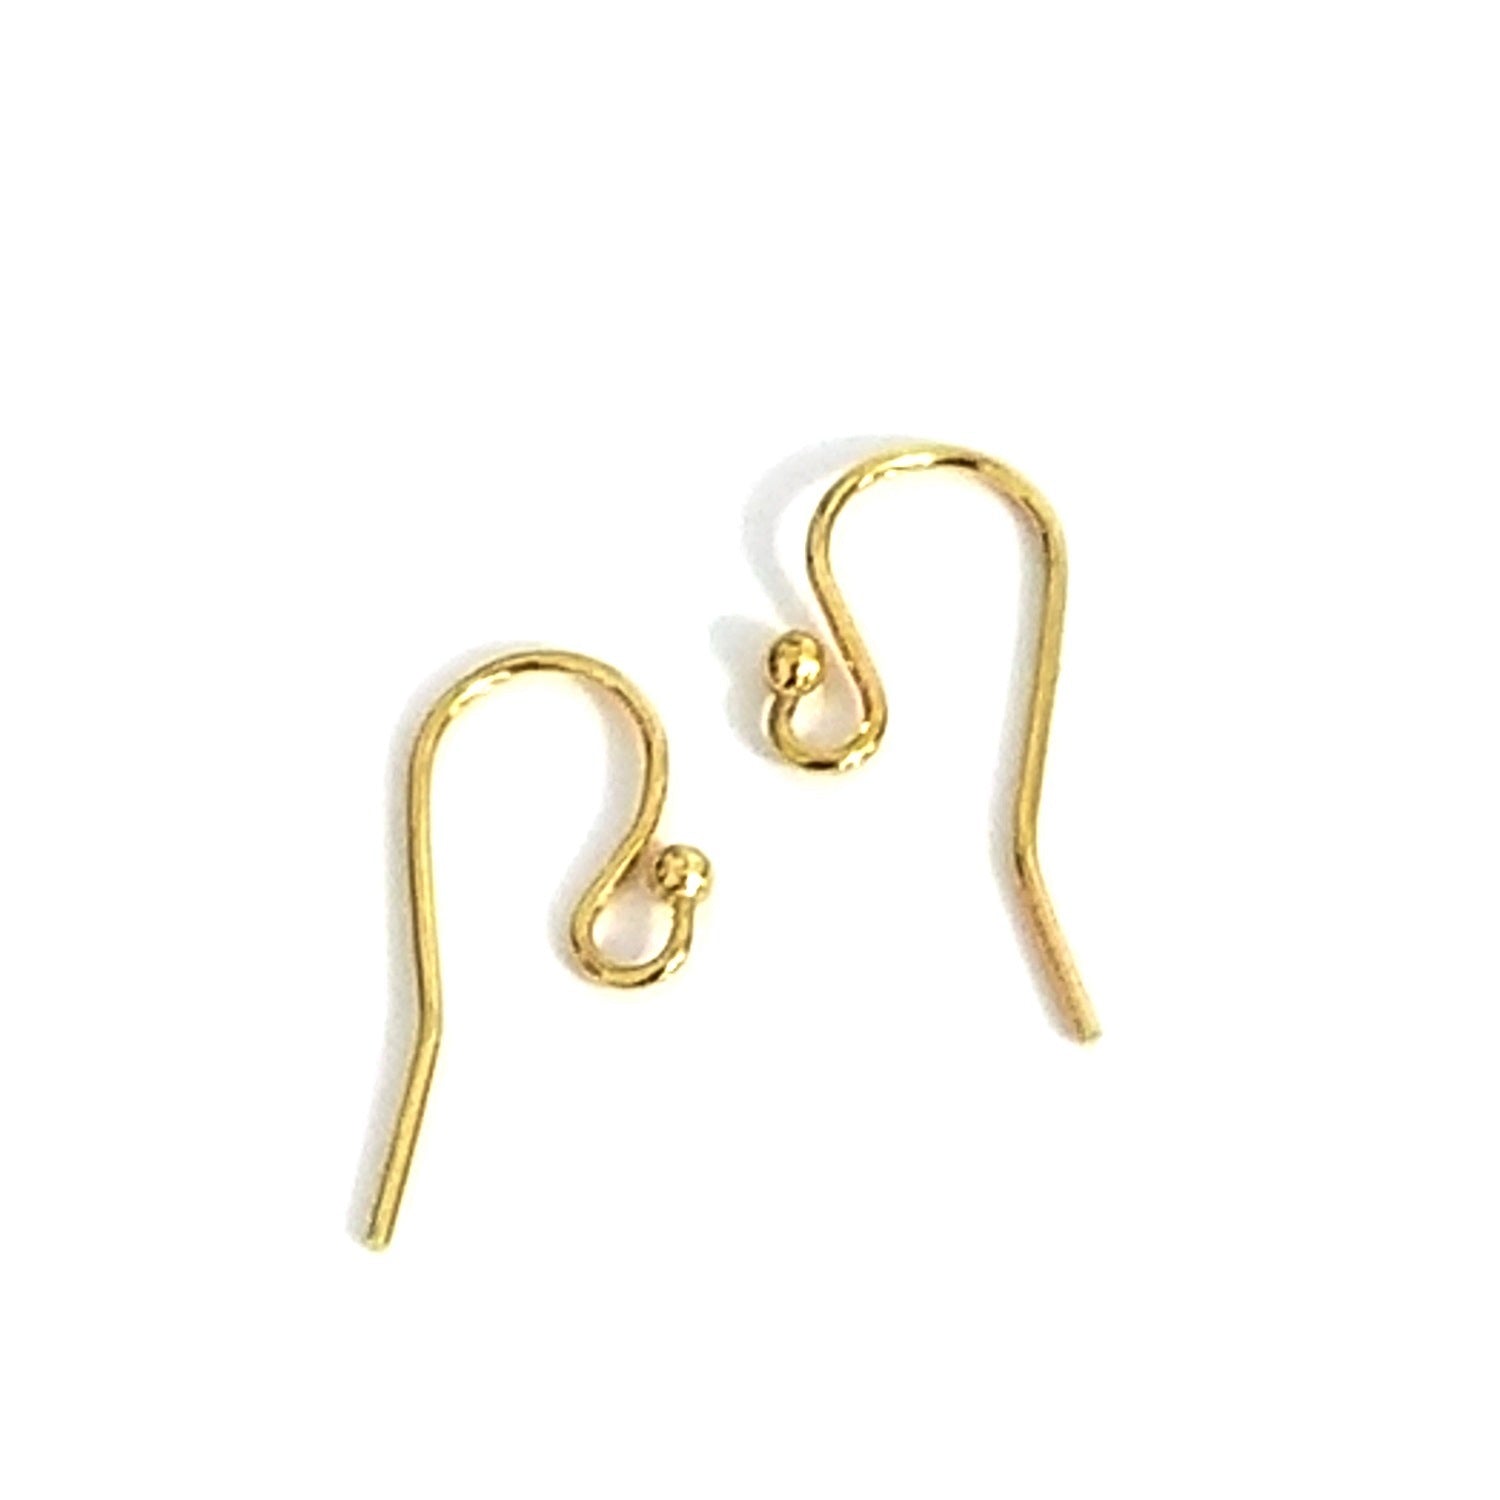 Stainless Steel Earring Hooks Pendant Earrings Wire Jewelry